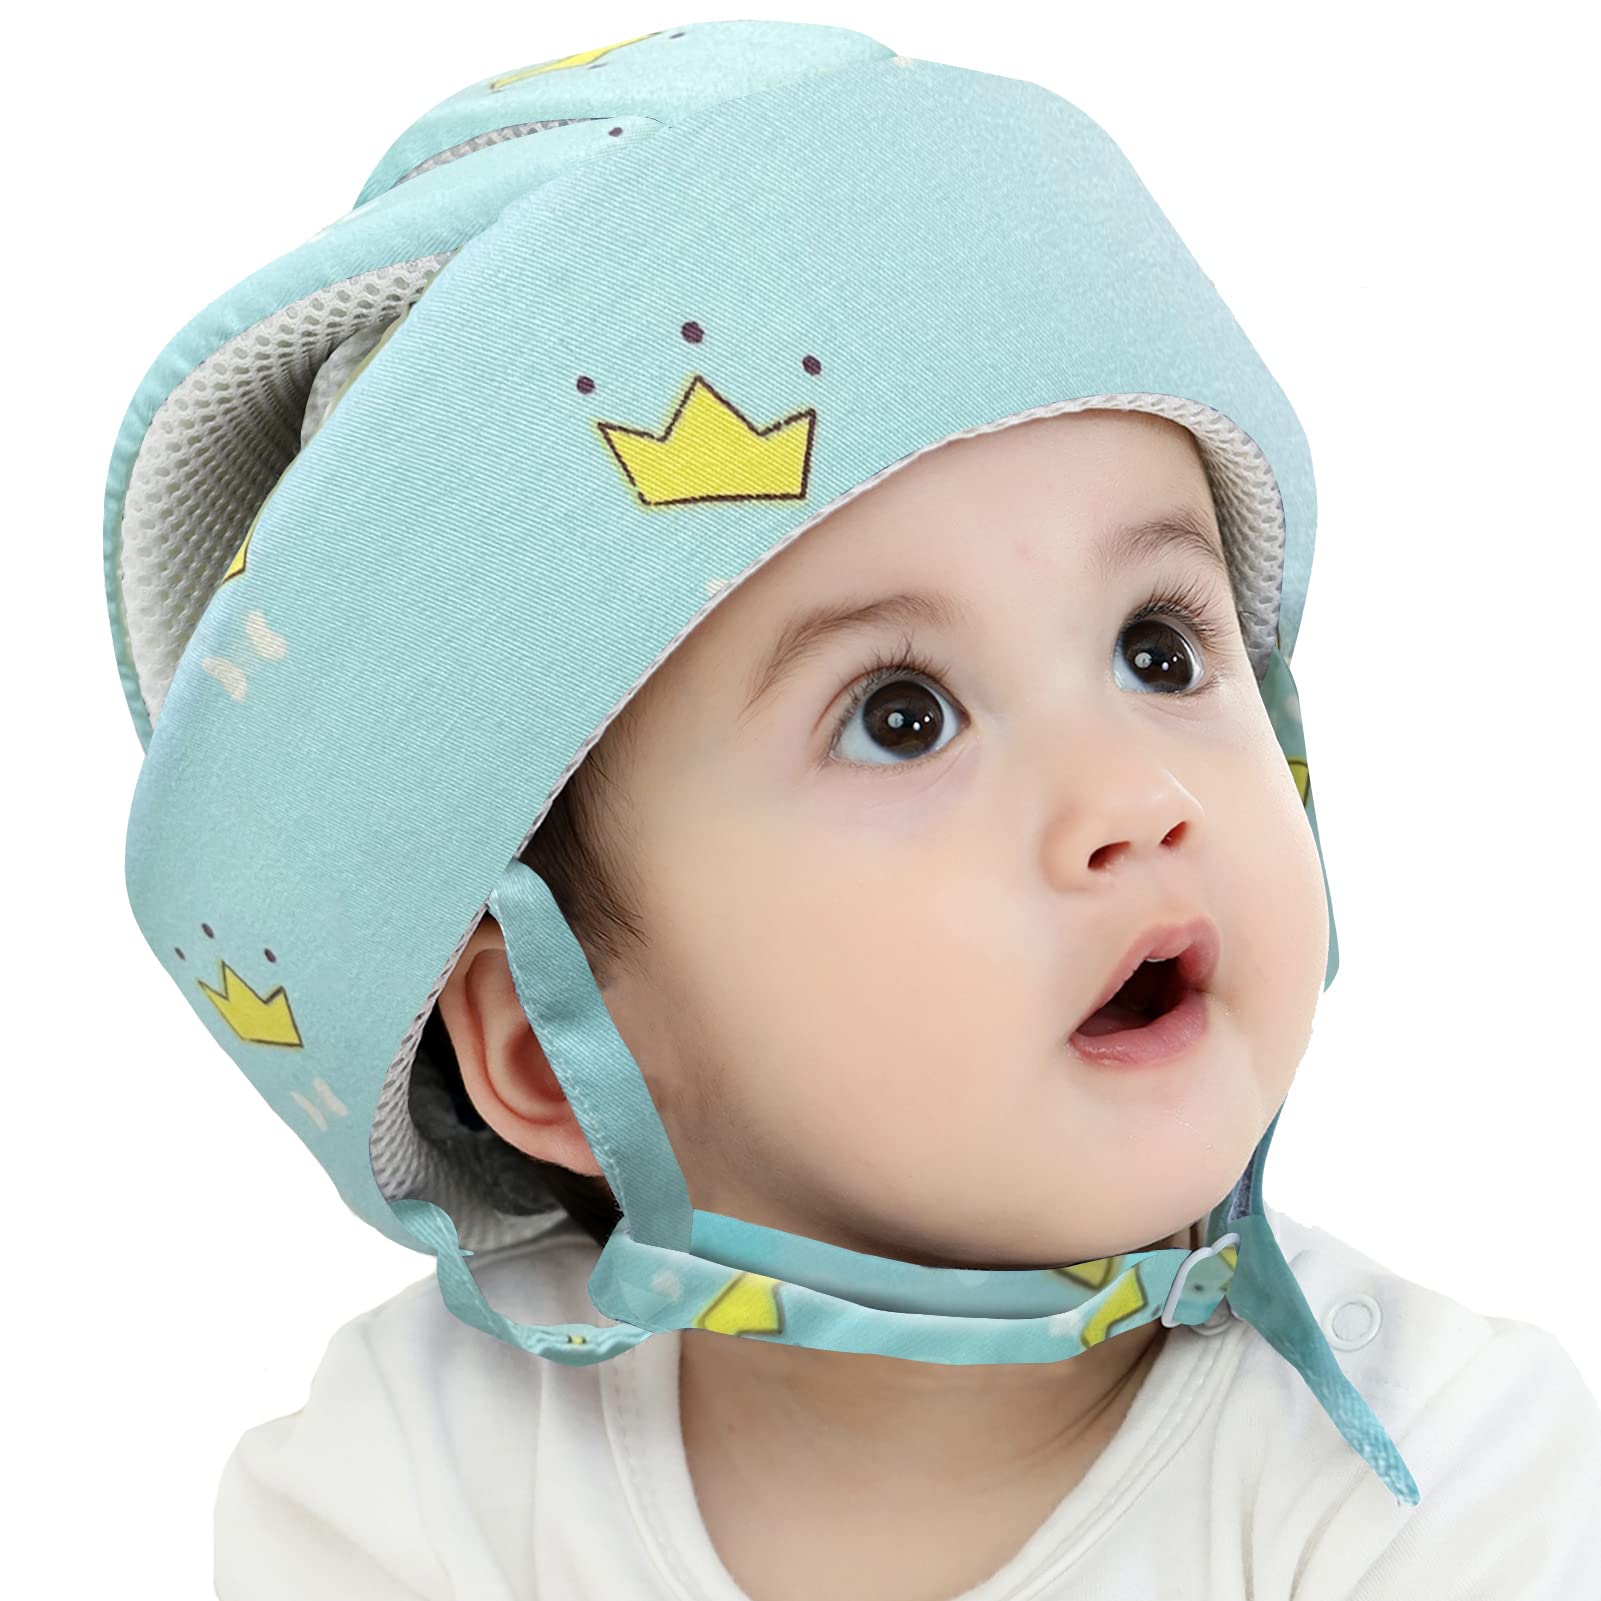 Baby Safety Helmet Head Protection - Casque de Sécurité pour Bébé -  LPMarocaine